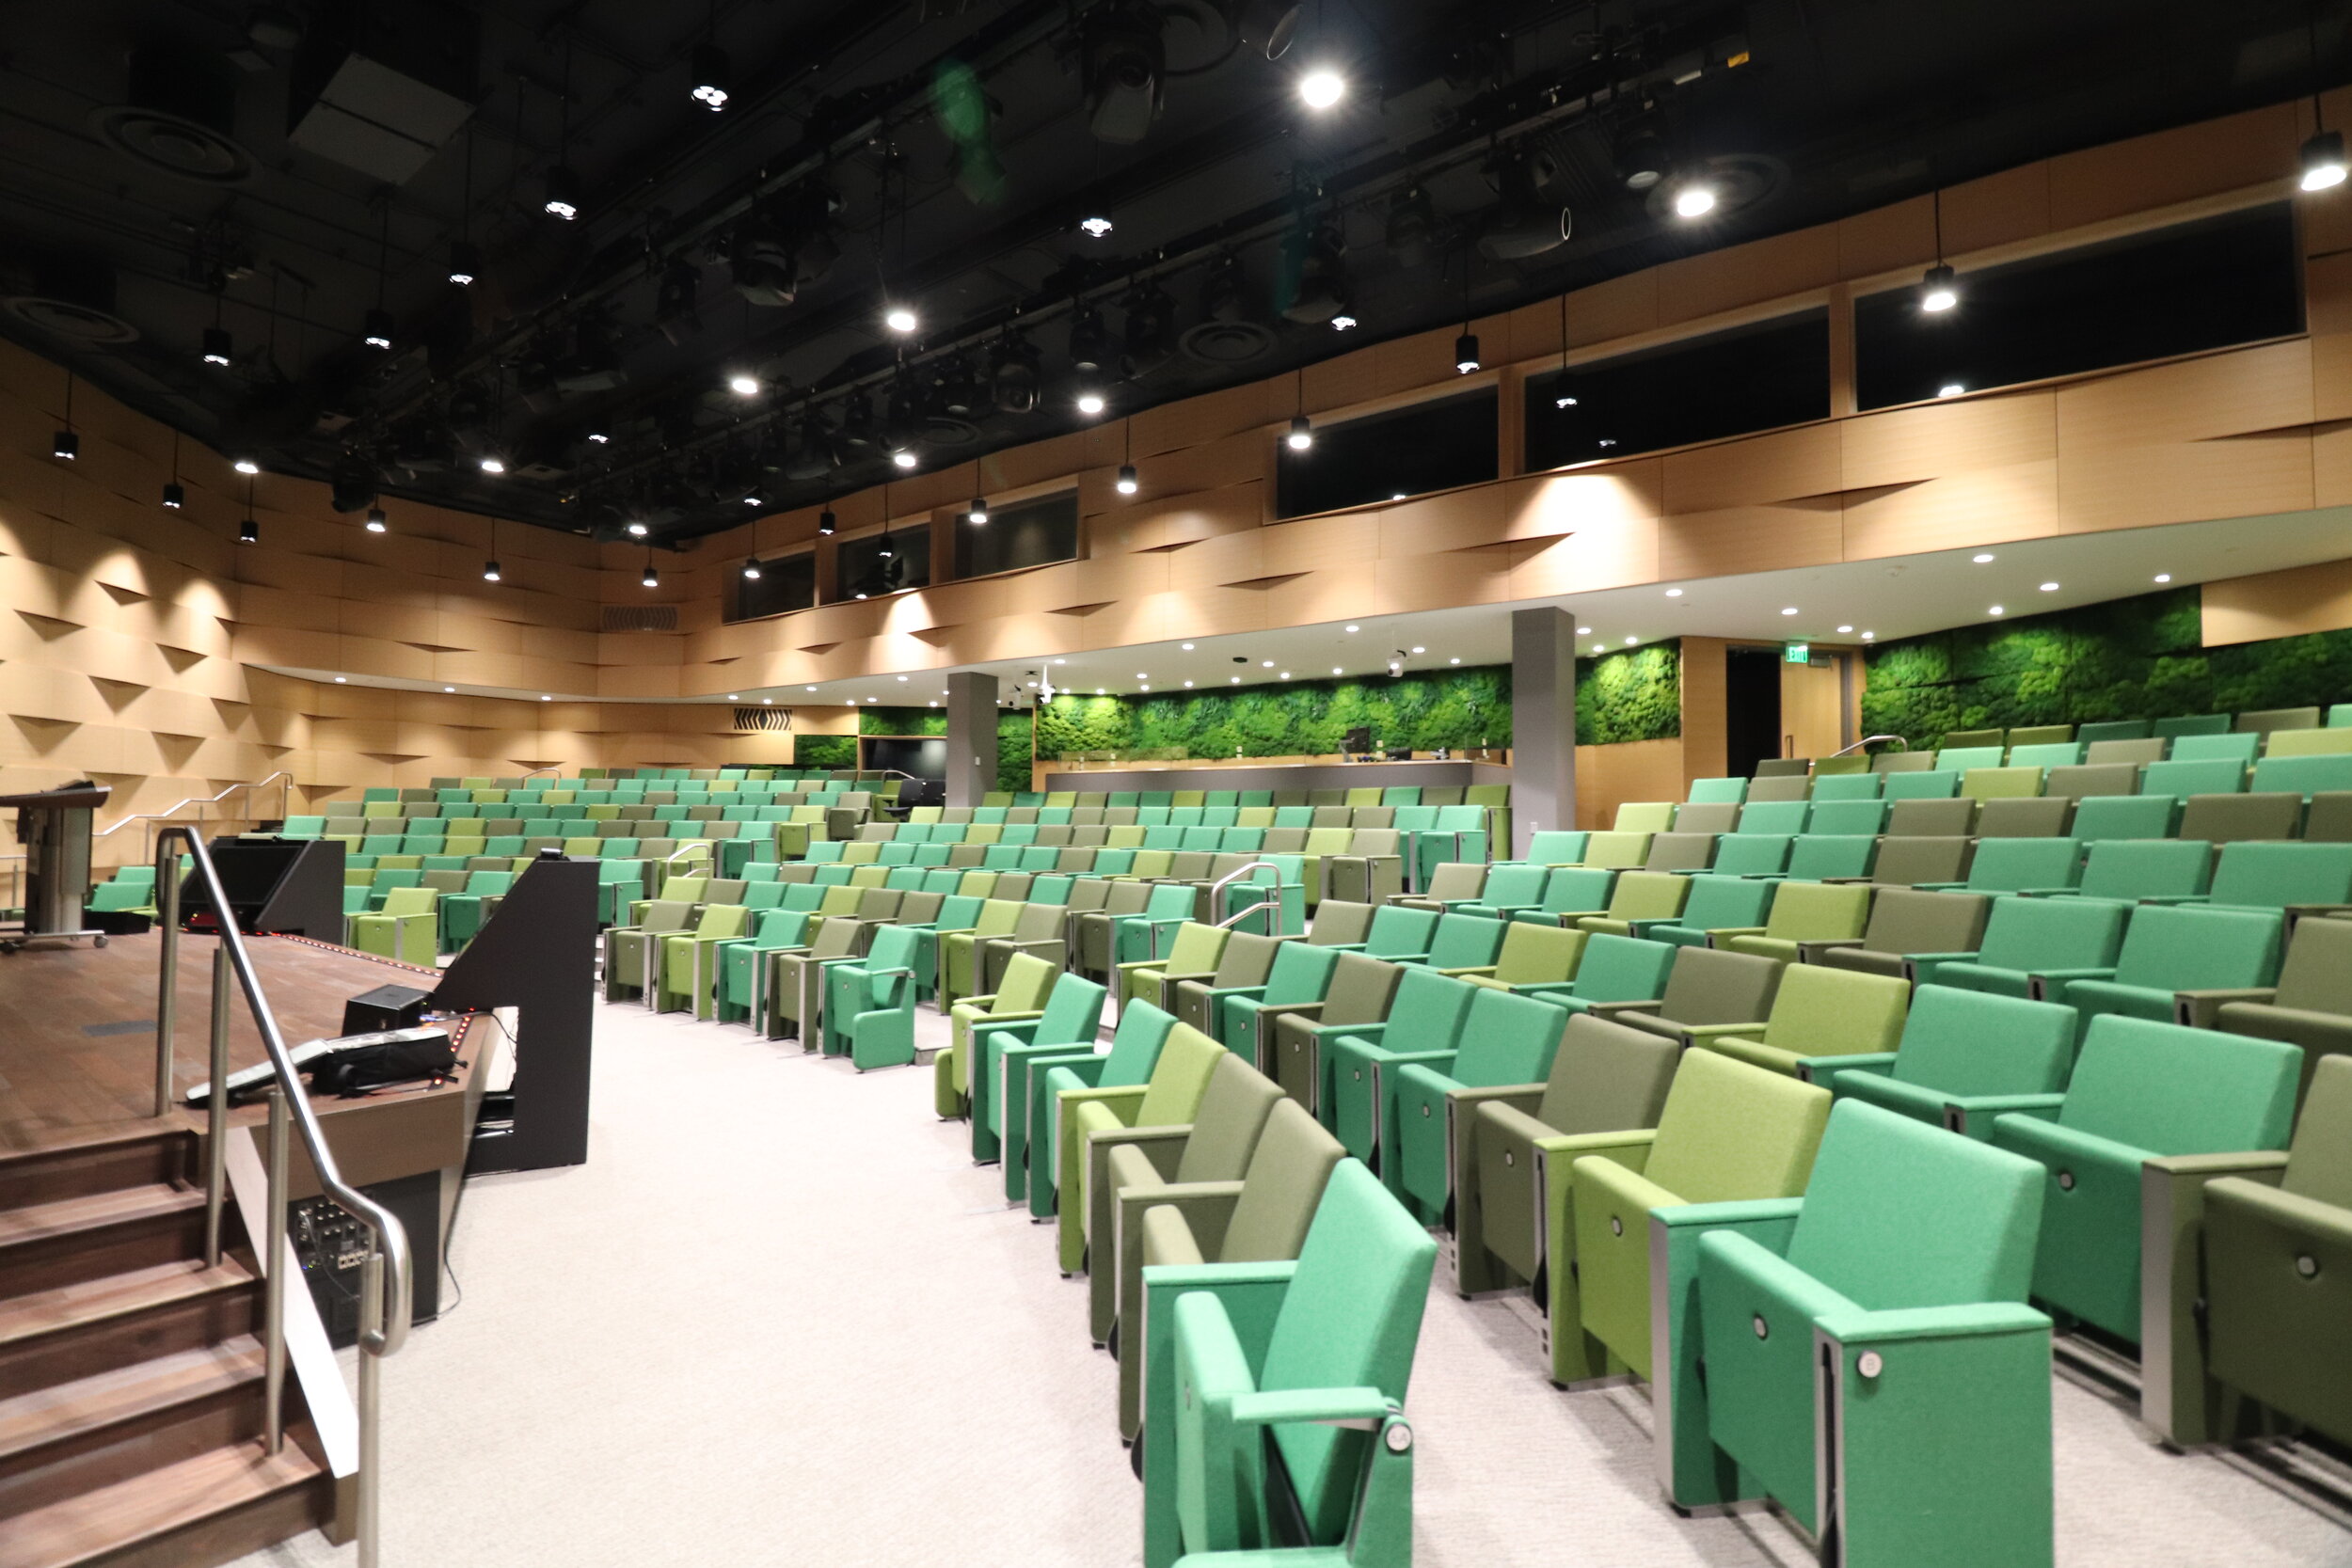  Google Auditorium Refresh  